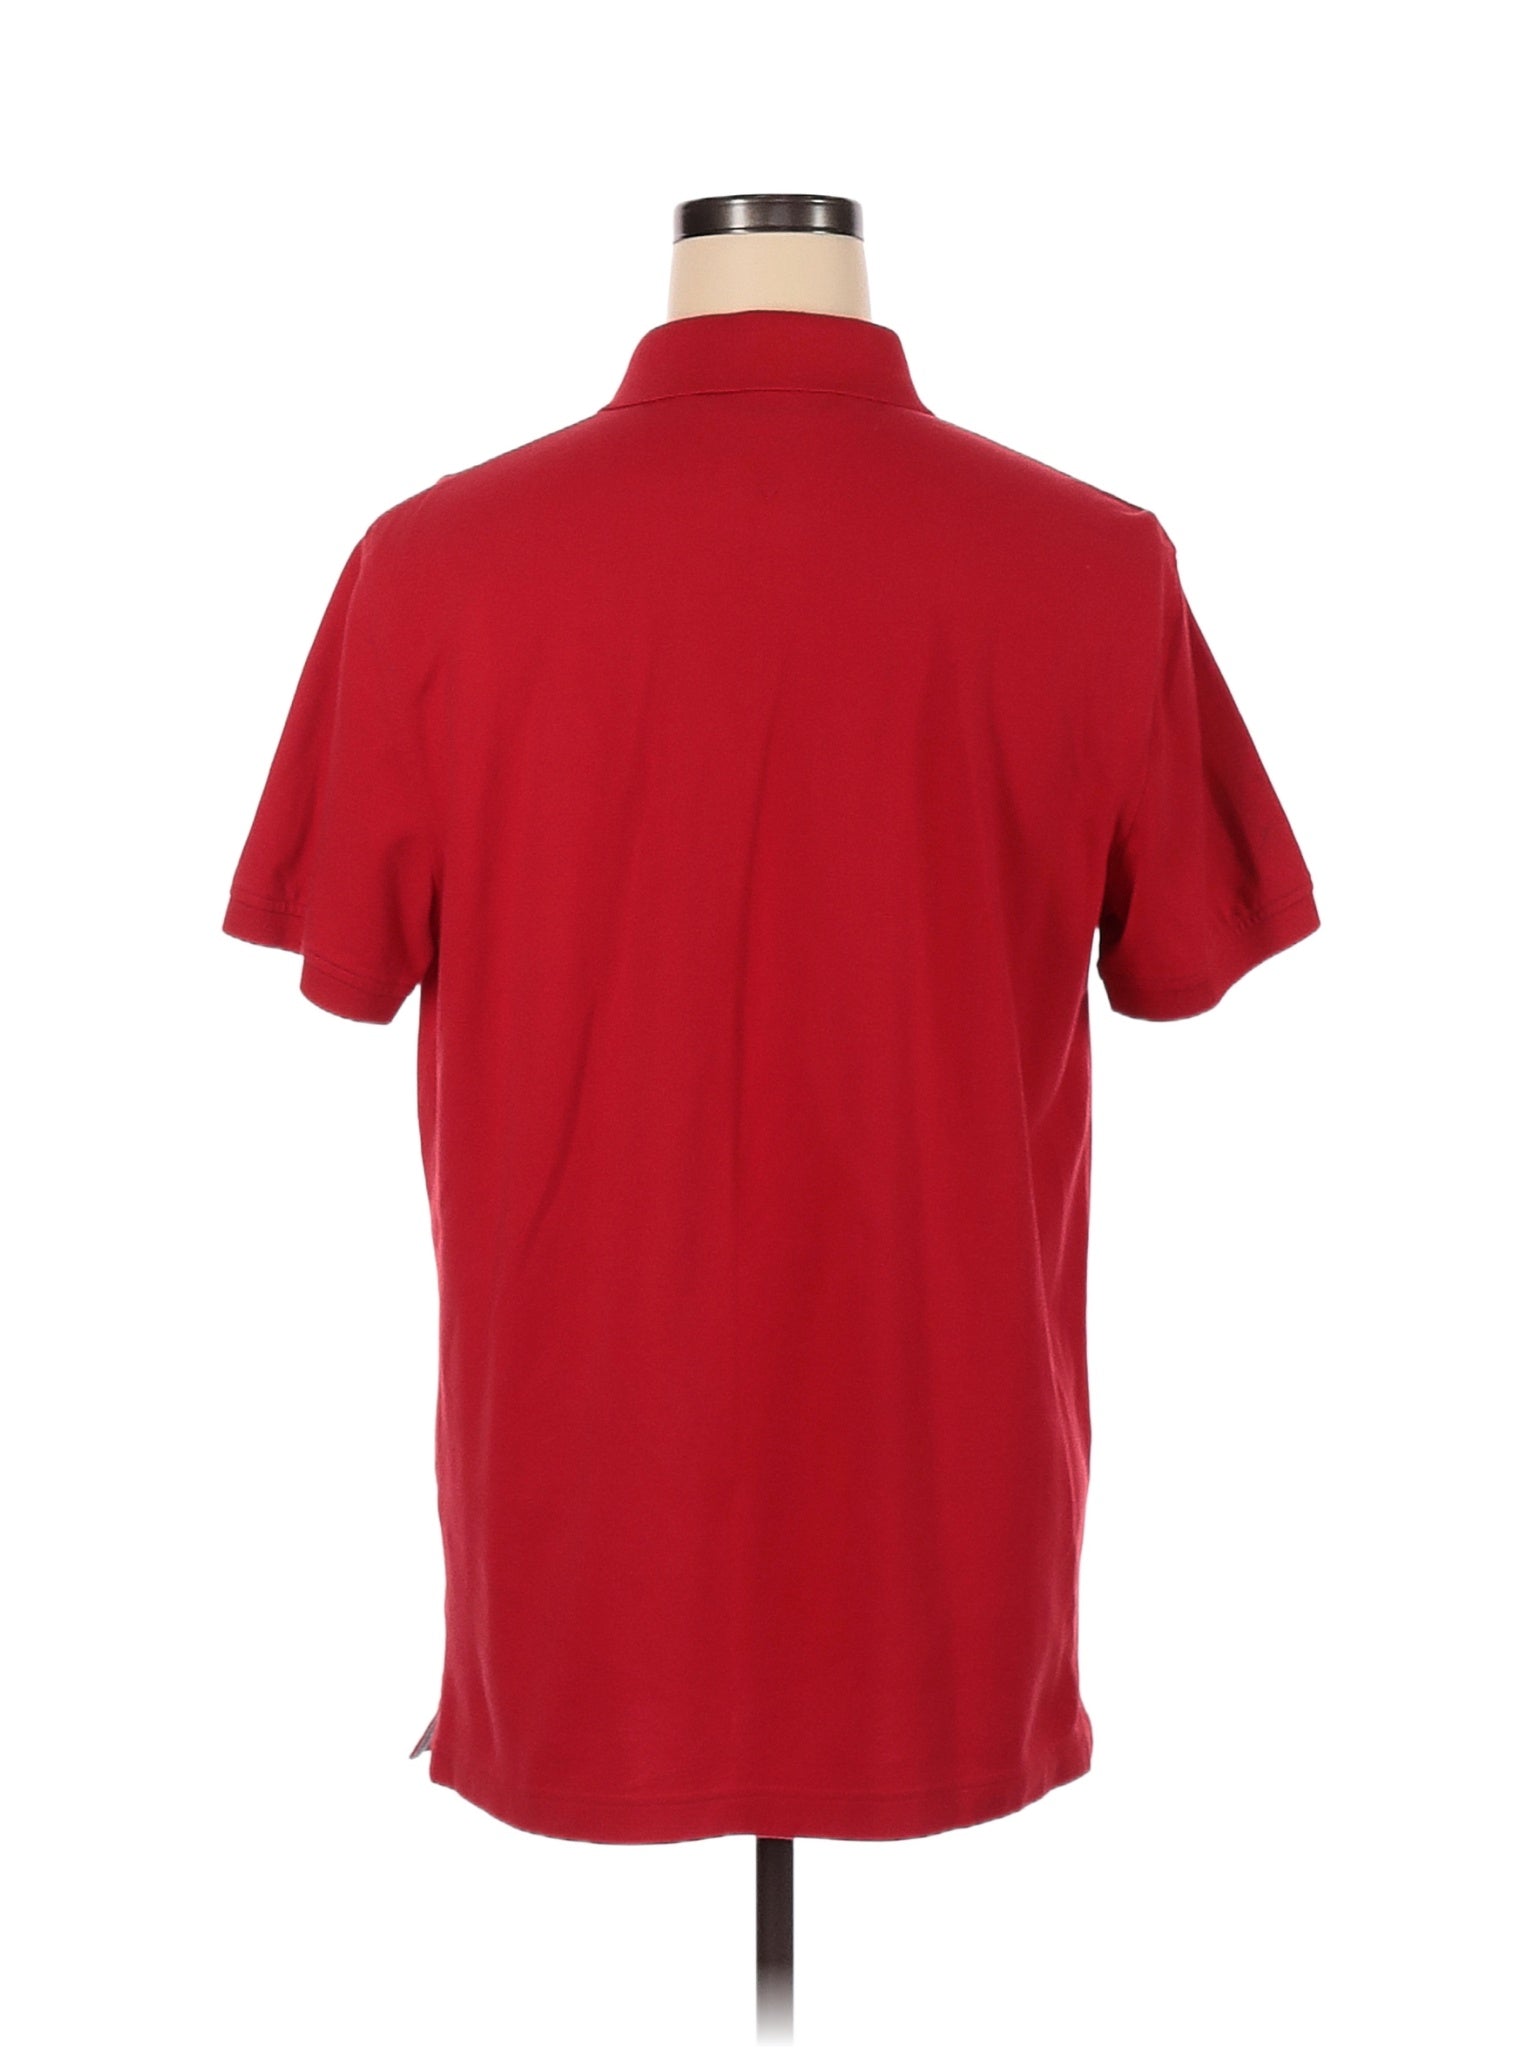 Polo Shirt size - L